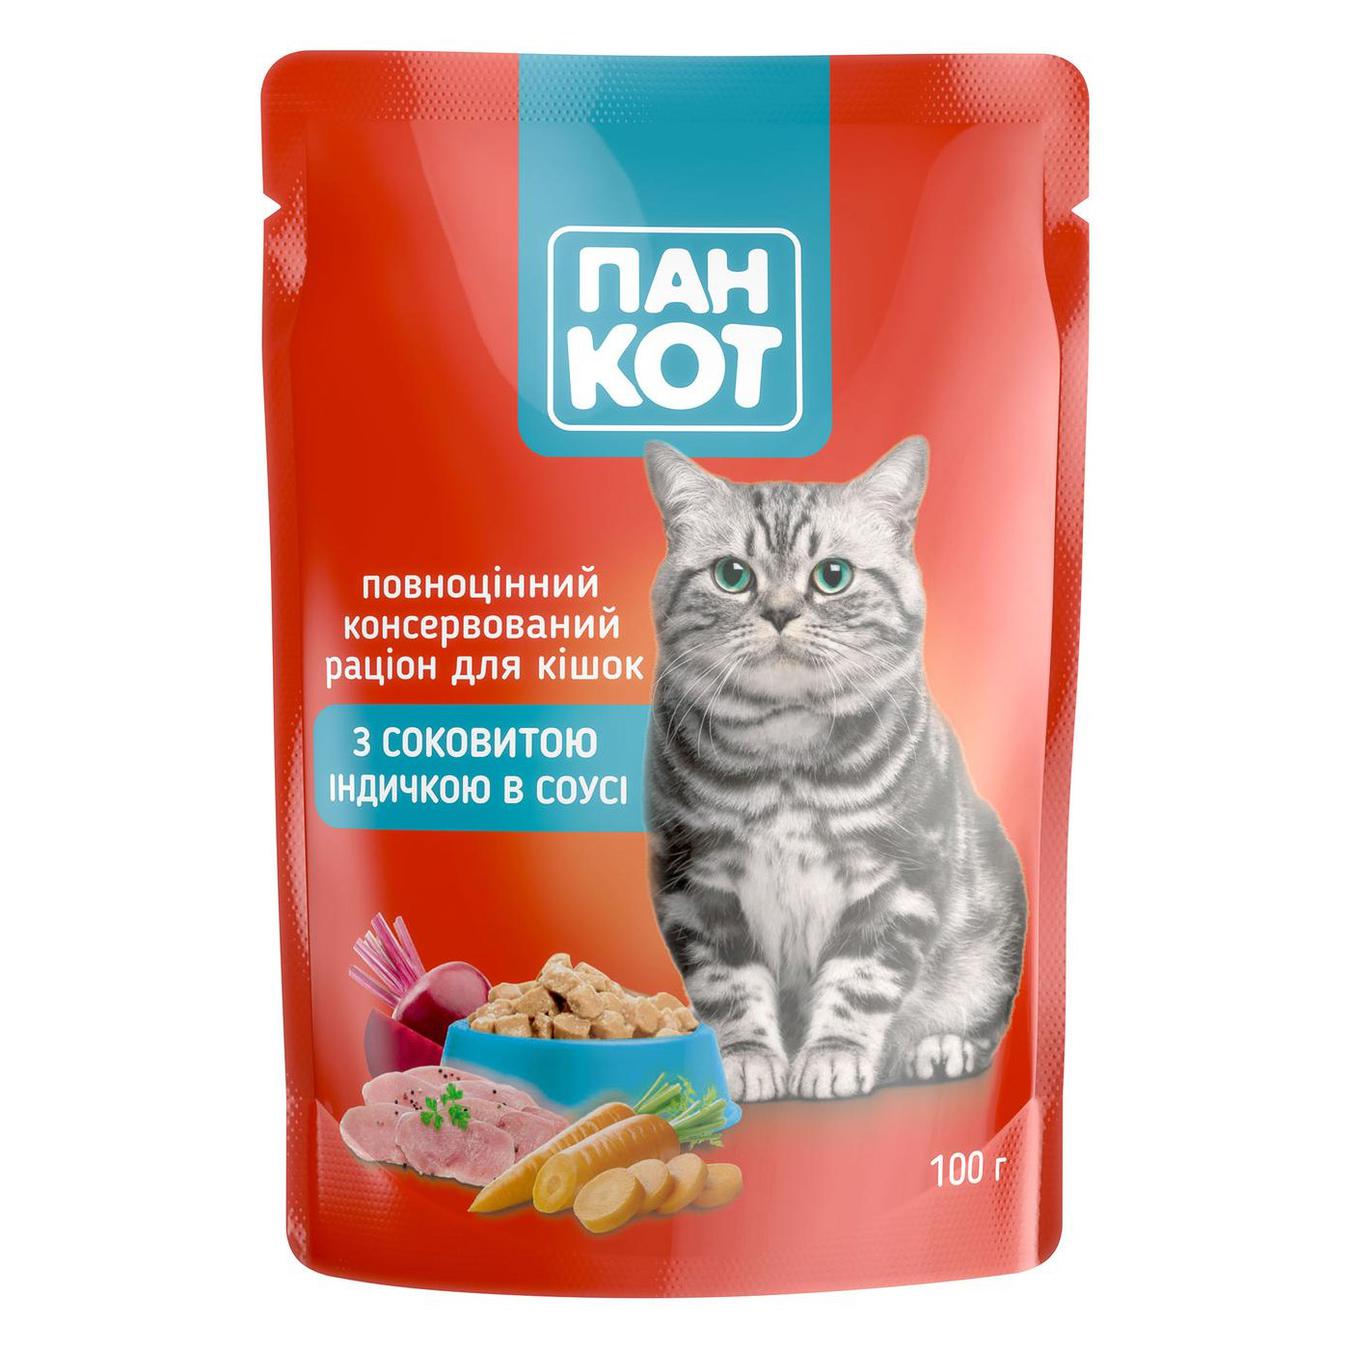 Корм Пан Кіт вологий з соковитою індичкою в соусі для кішок 100г